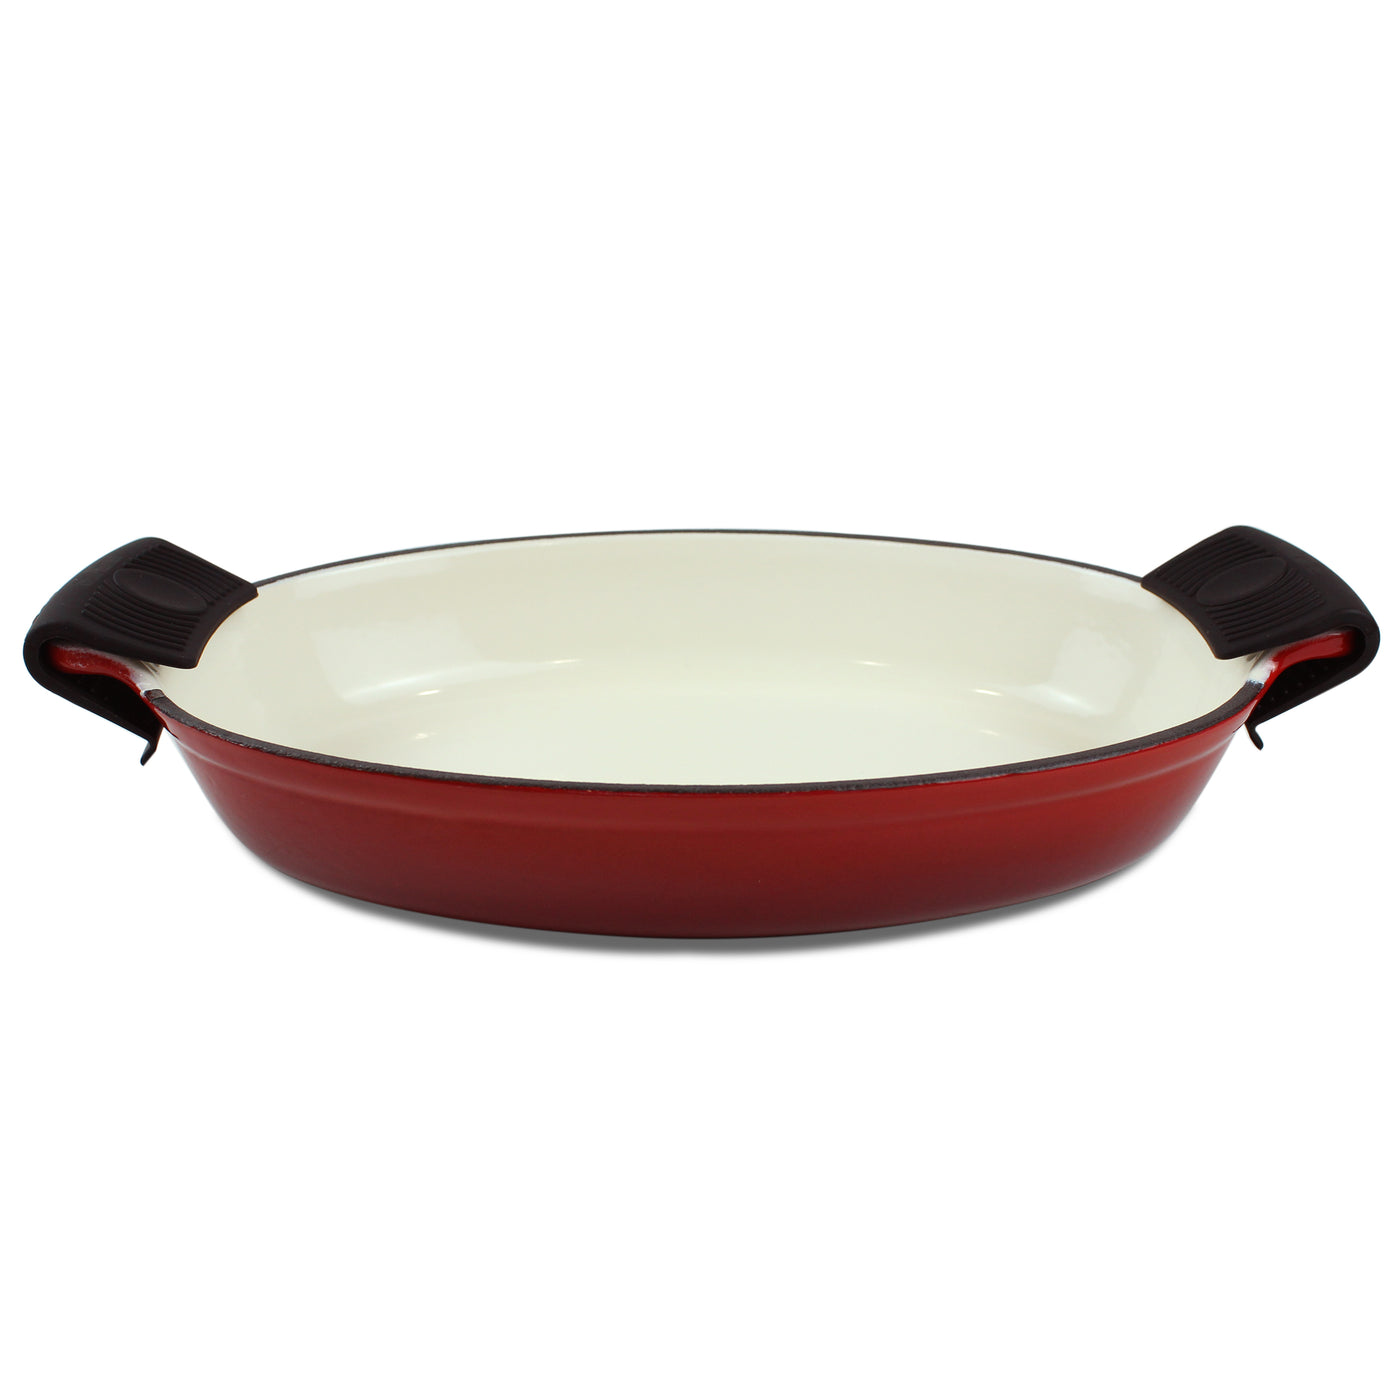 1.58 夸脱搪瓷铸铁椭圆形烤盘、烤宽面条盘、烤盘 - 红色 + 2 个隔热垫